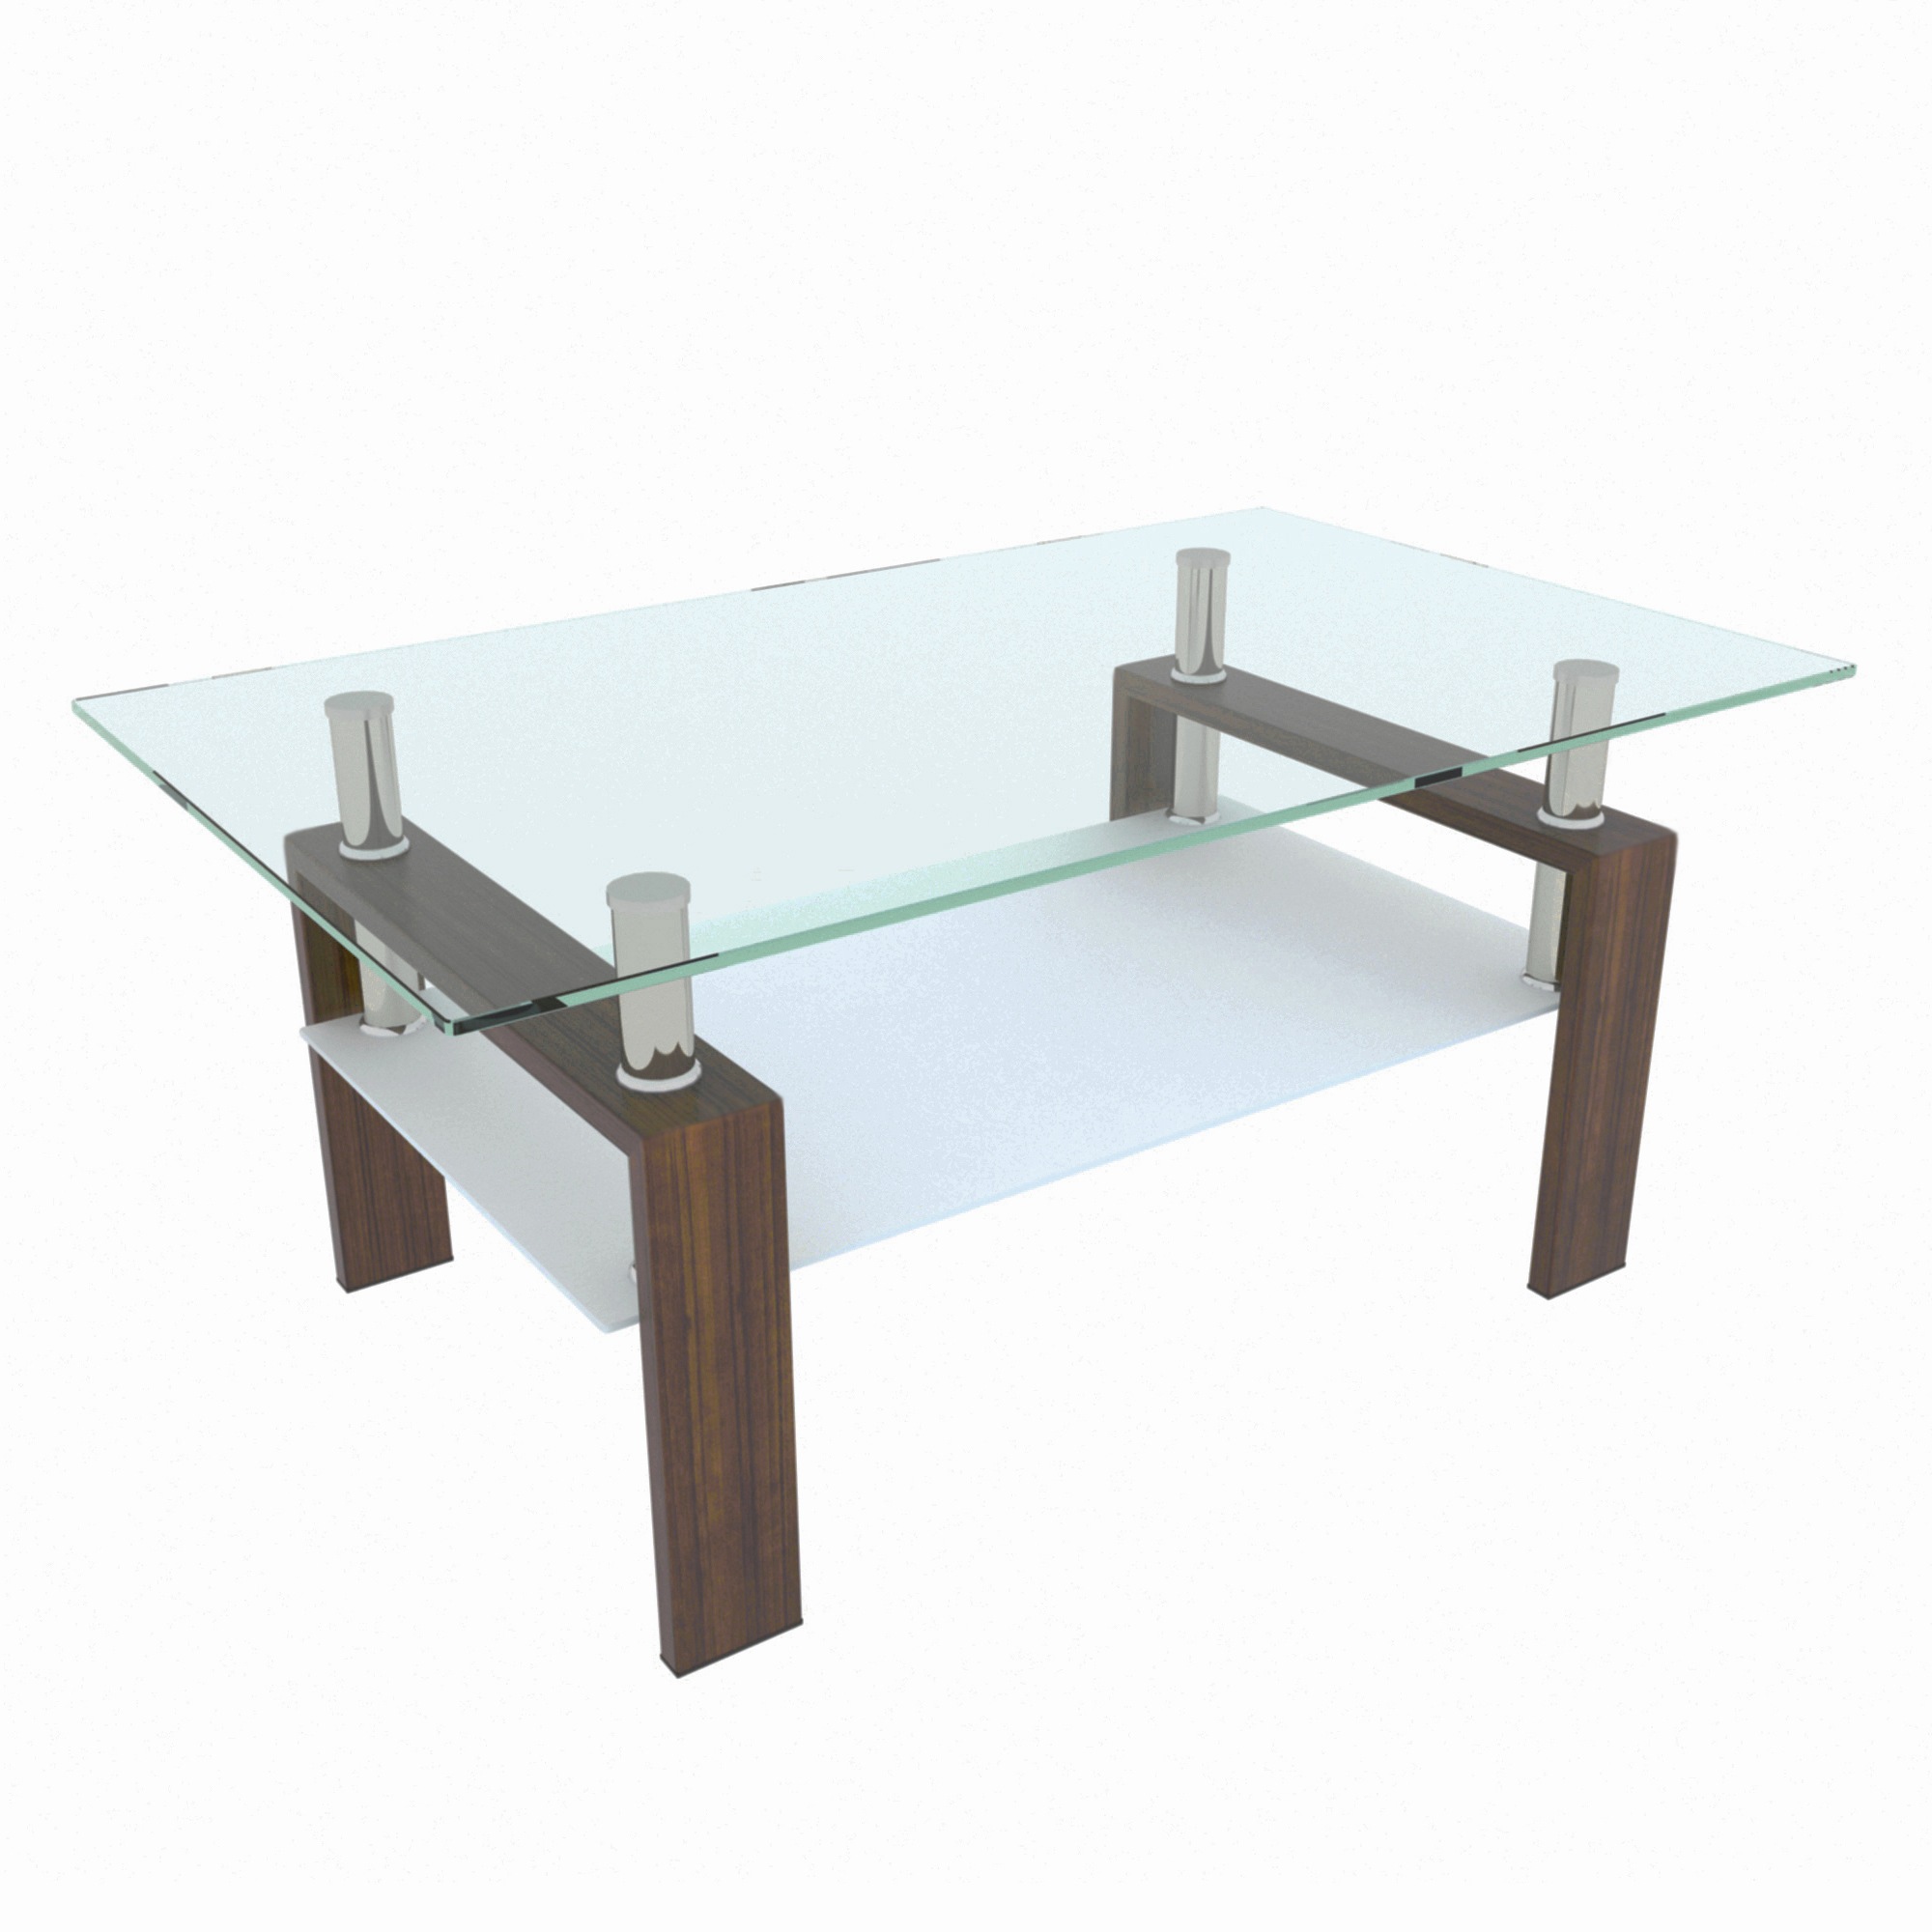 国内発送 センターテーブル センターテーブル ガラス 長方形の客間テーブル 強化ガラス 長方形 テーブル ローテーブル テーブル 台形 ローテーブル テーブル